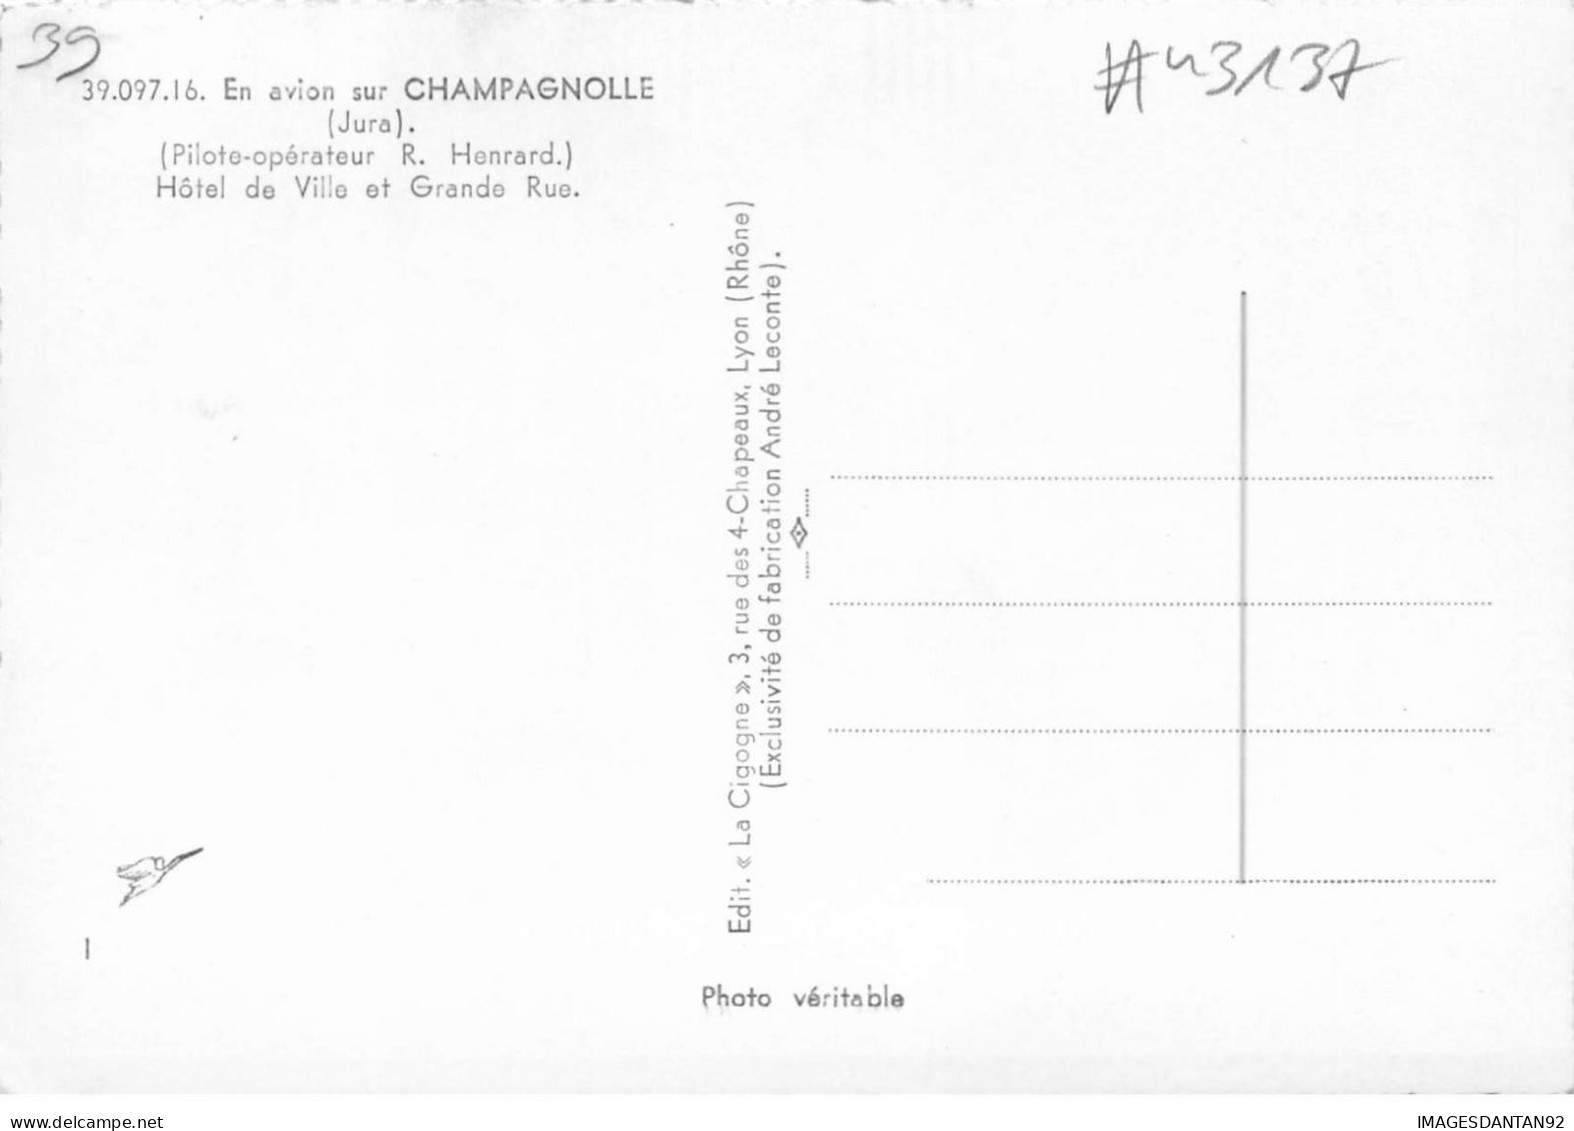 39 CHAMPAGNOLLE #MK43137 HOTEL DE VILLE ET GRANDE RUE VUE AERIENNE - Champagnole